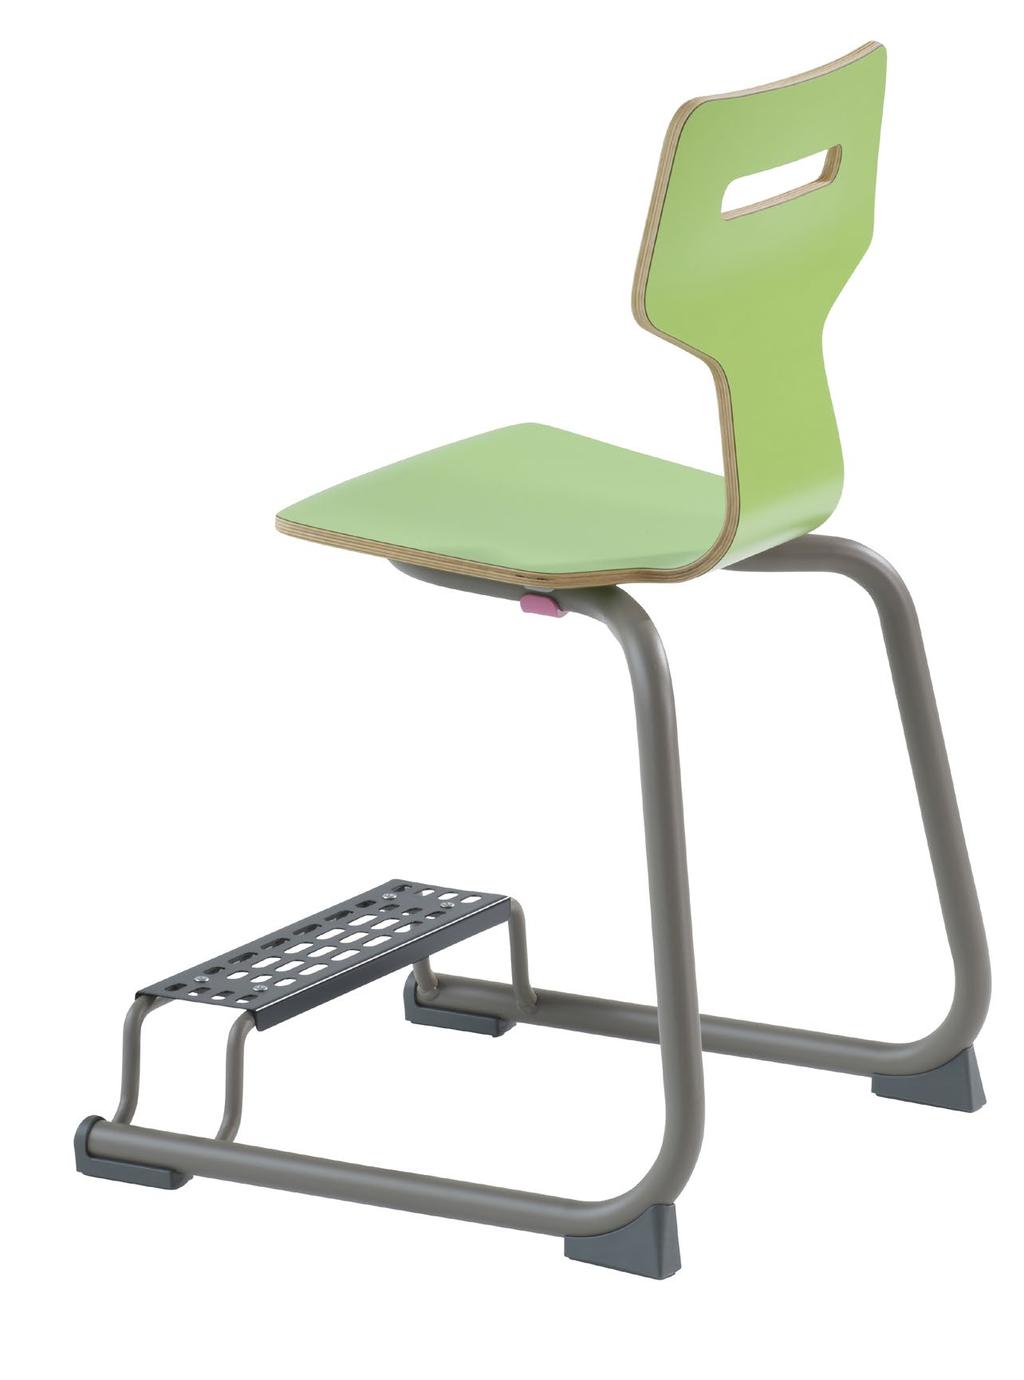 Der Stuhl ist mit einer Sitzschale aus Kunststoff oder Holz ausgestattet und eignet sich für die Tischhöhe 4 (64 cm) oder